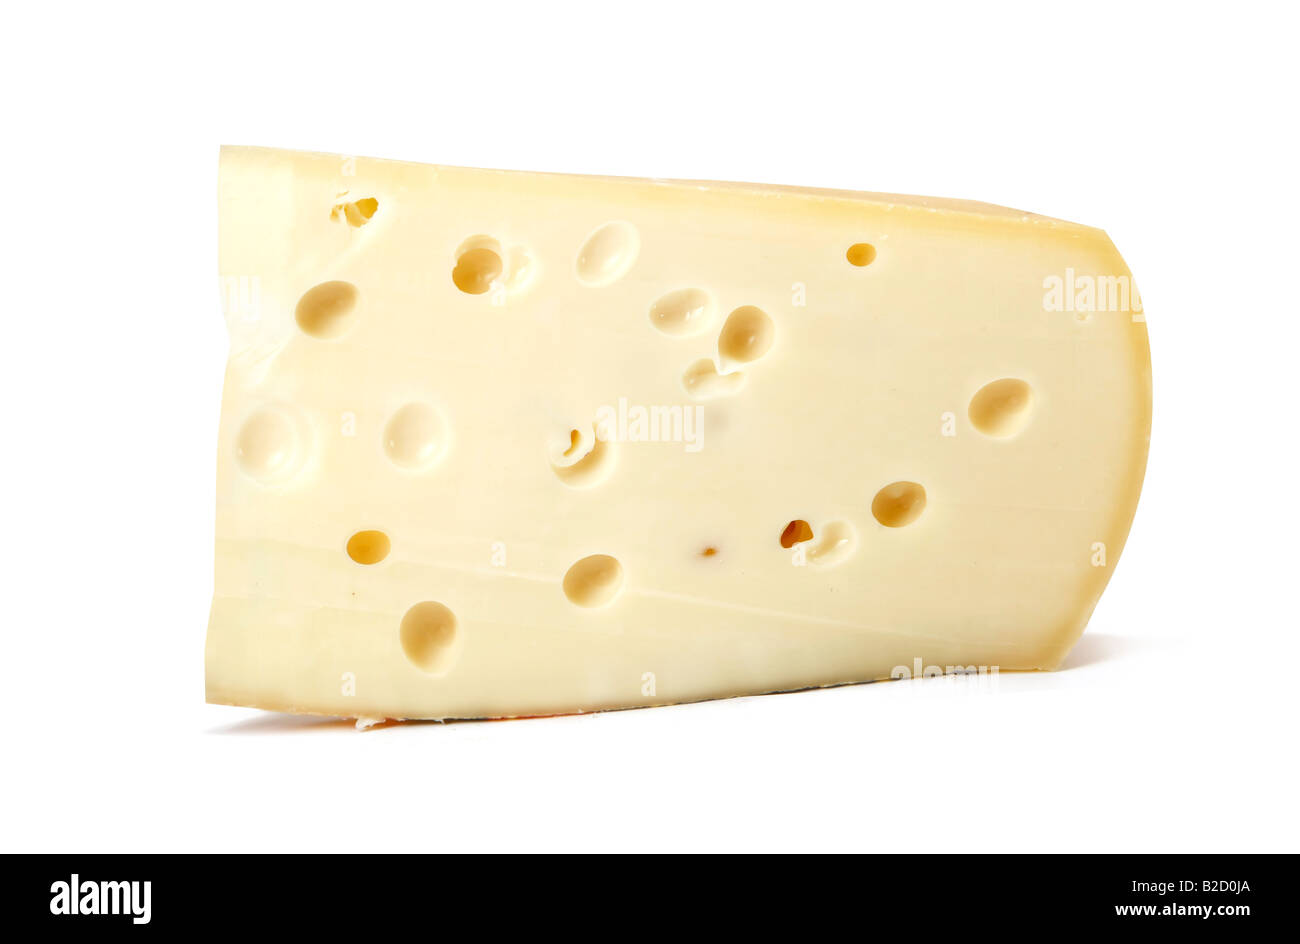 Stück Käse isoliert auf weißem Hintergrund große XXL-Datei im Studio mit einer 21-Megapixel-Kamera aufgenommen Stockfoto